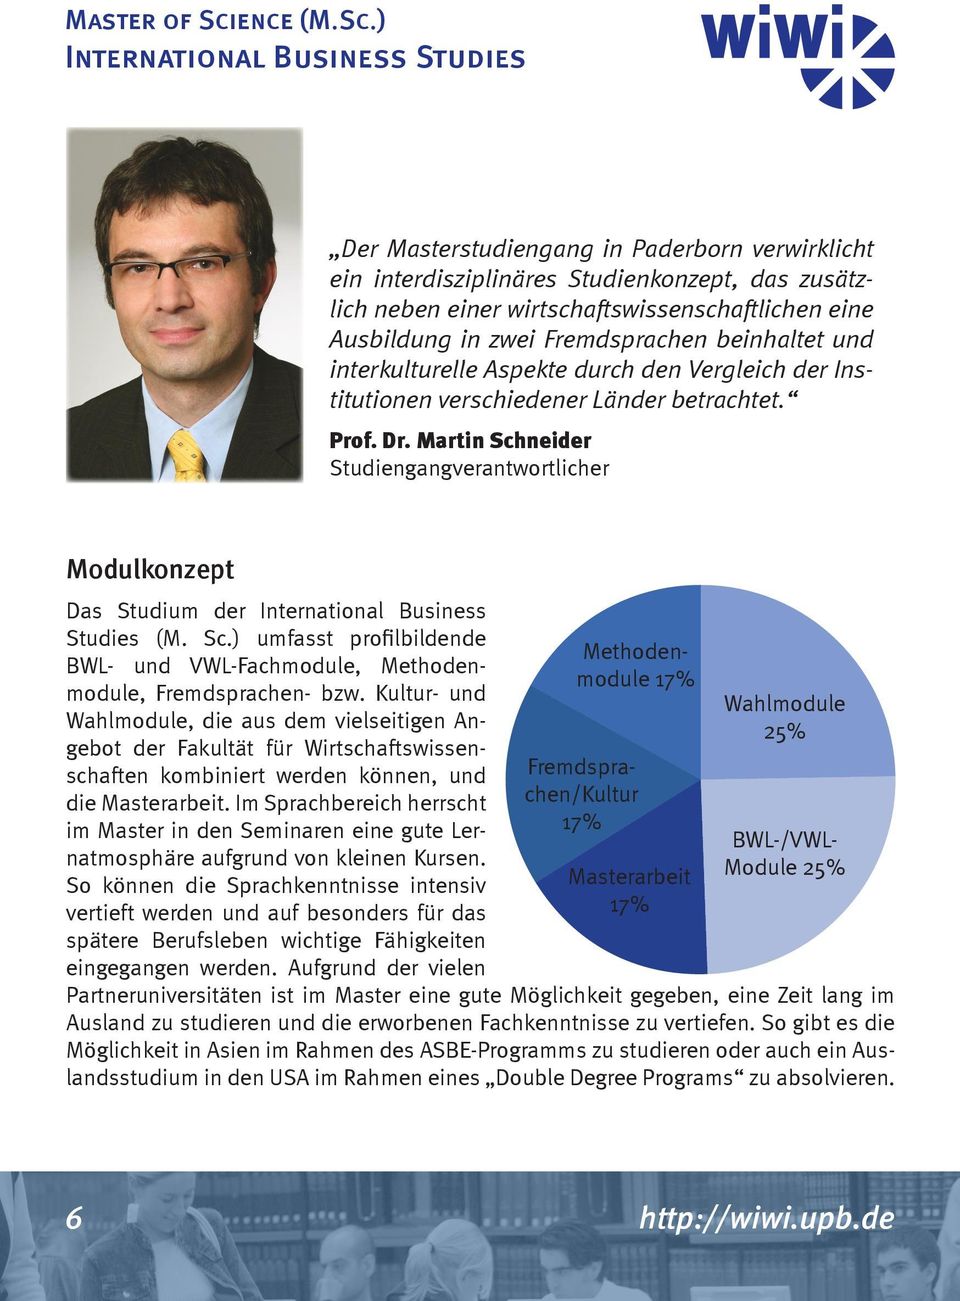 ) International Business Studies Der Masterstudiengang in Paderborn verwirklicht ein interdisziplinäres Studienkonzept, das zusätzlich neben einer wirtschaftswissenschaftlichen eine Ausbildung in